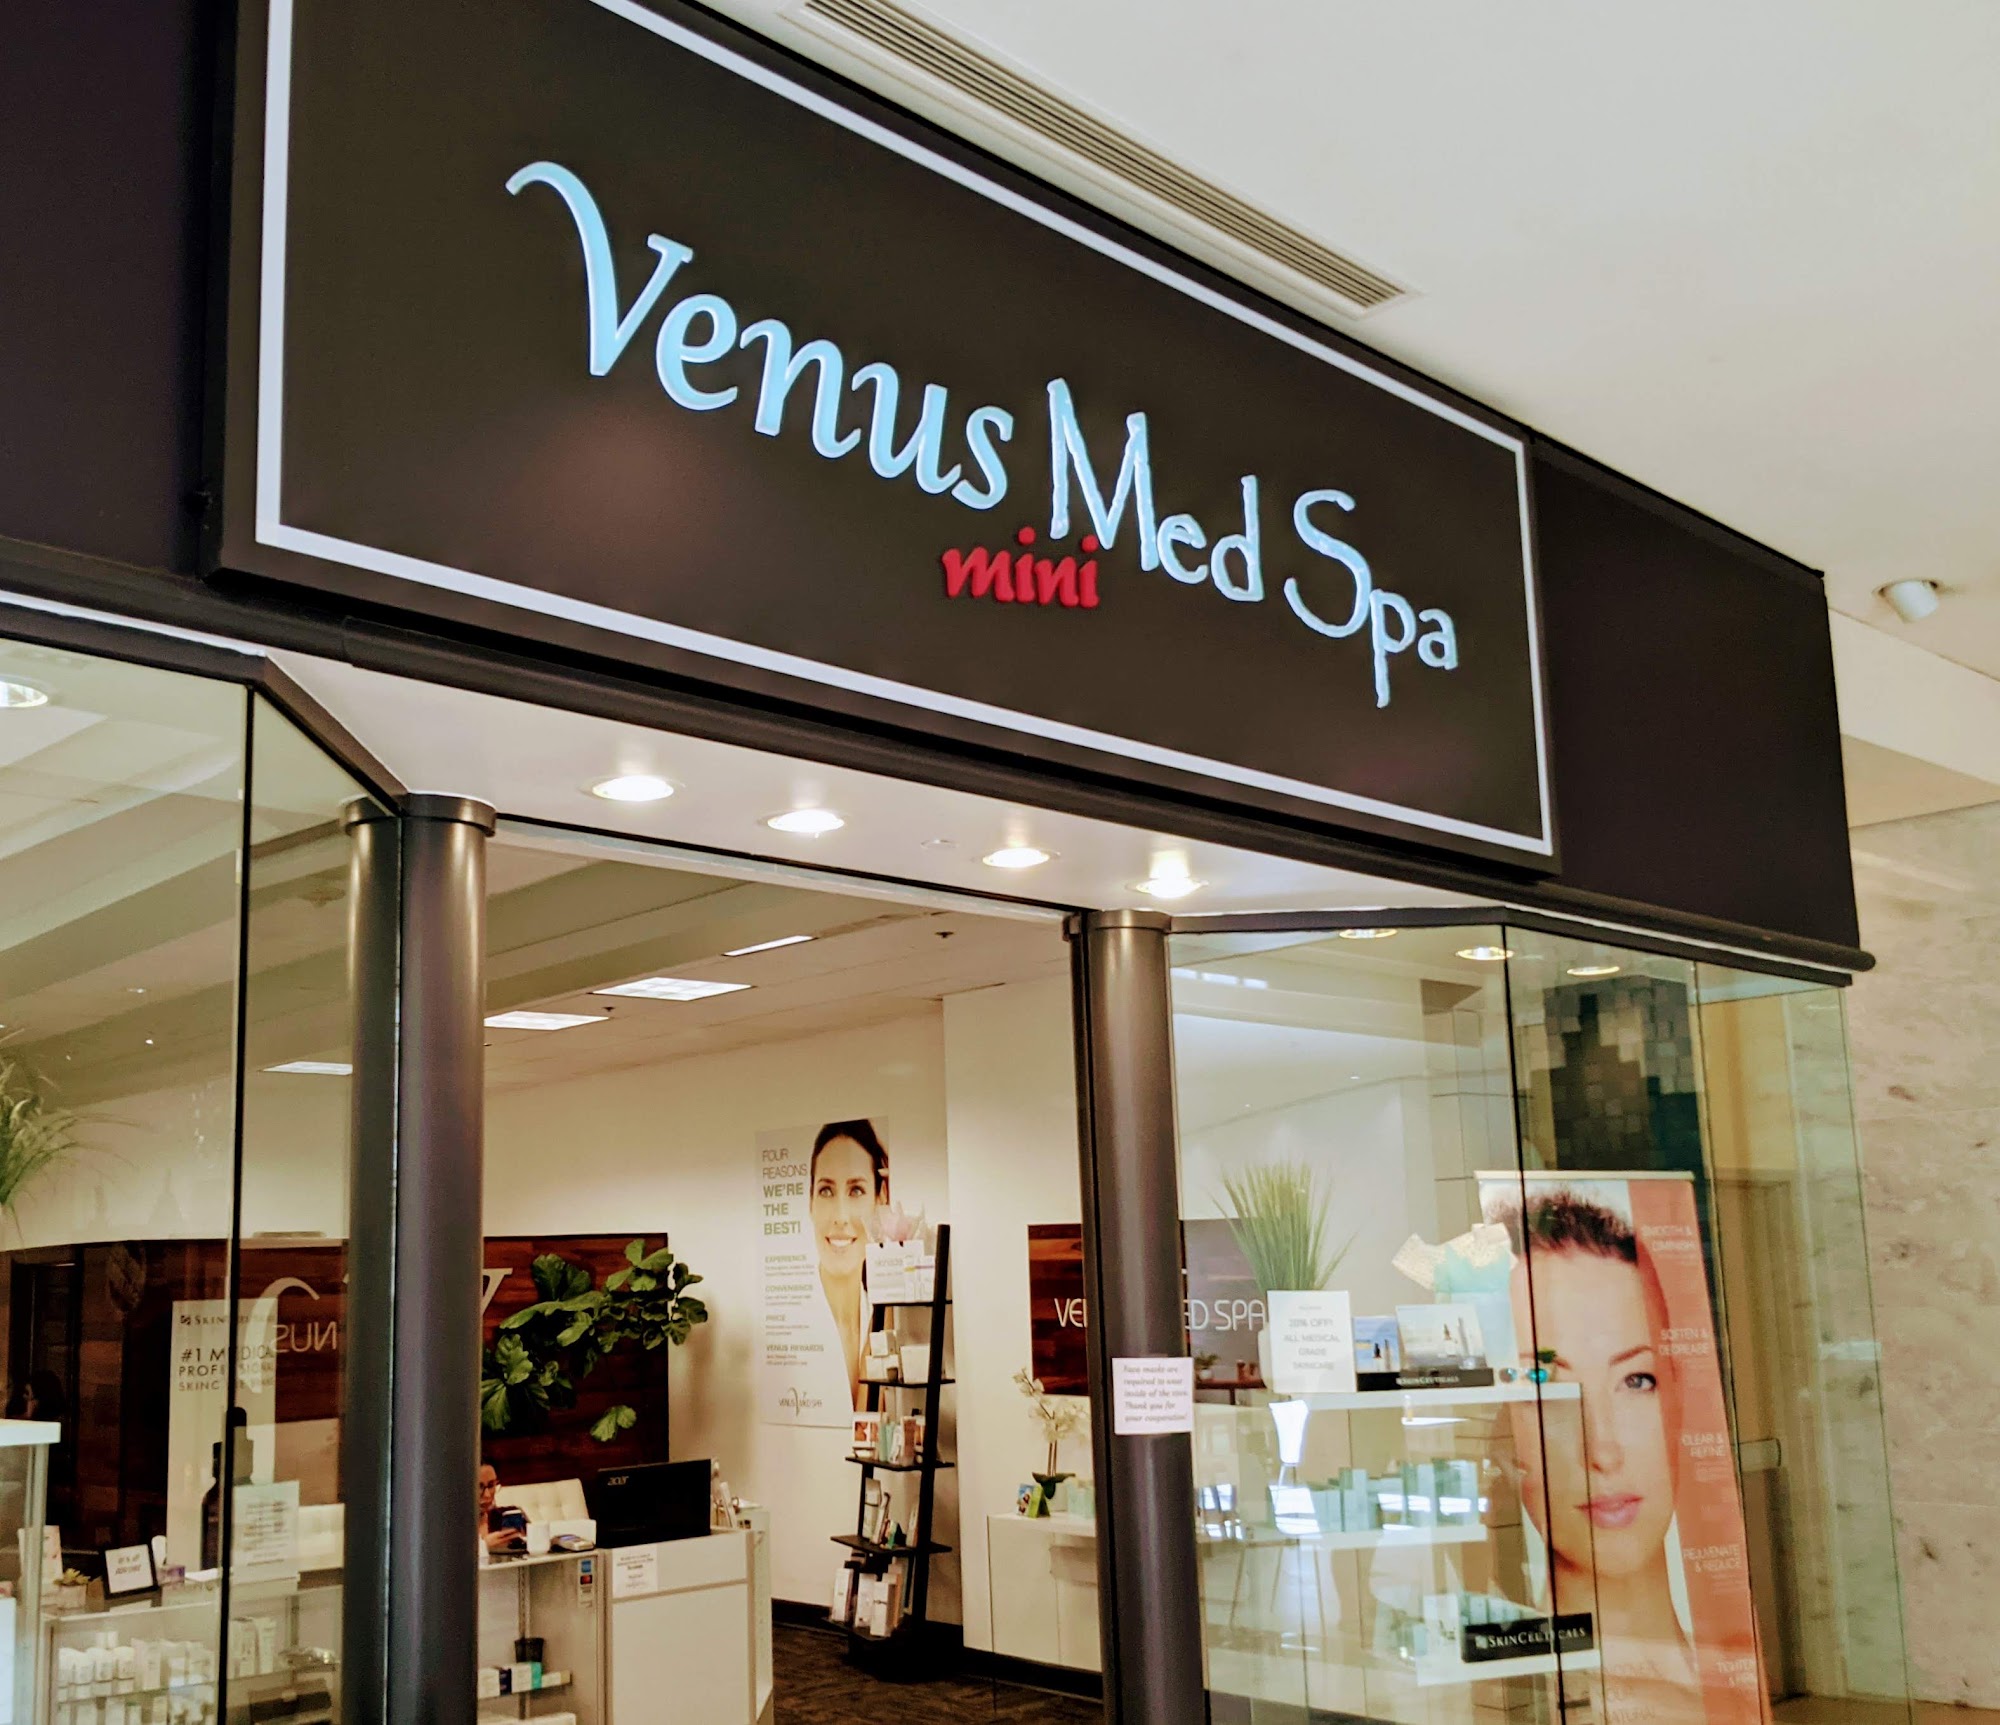 Venus Med Spa